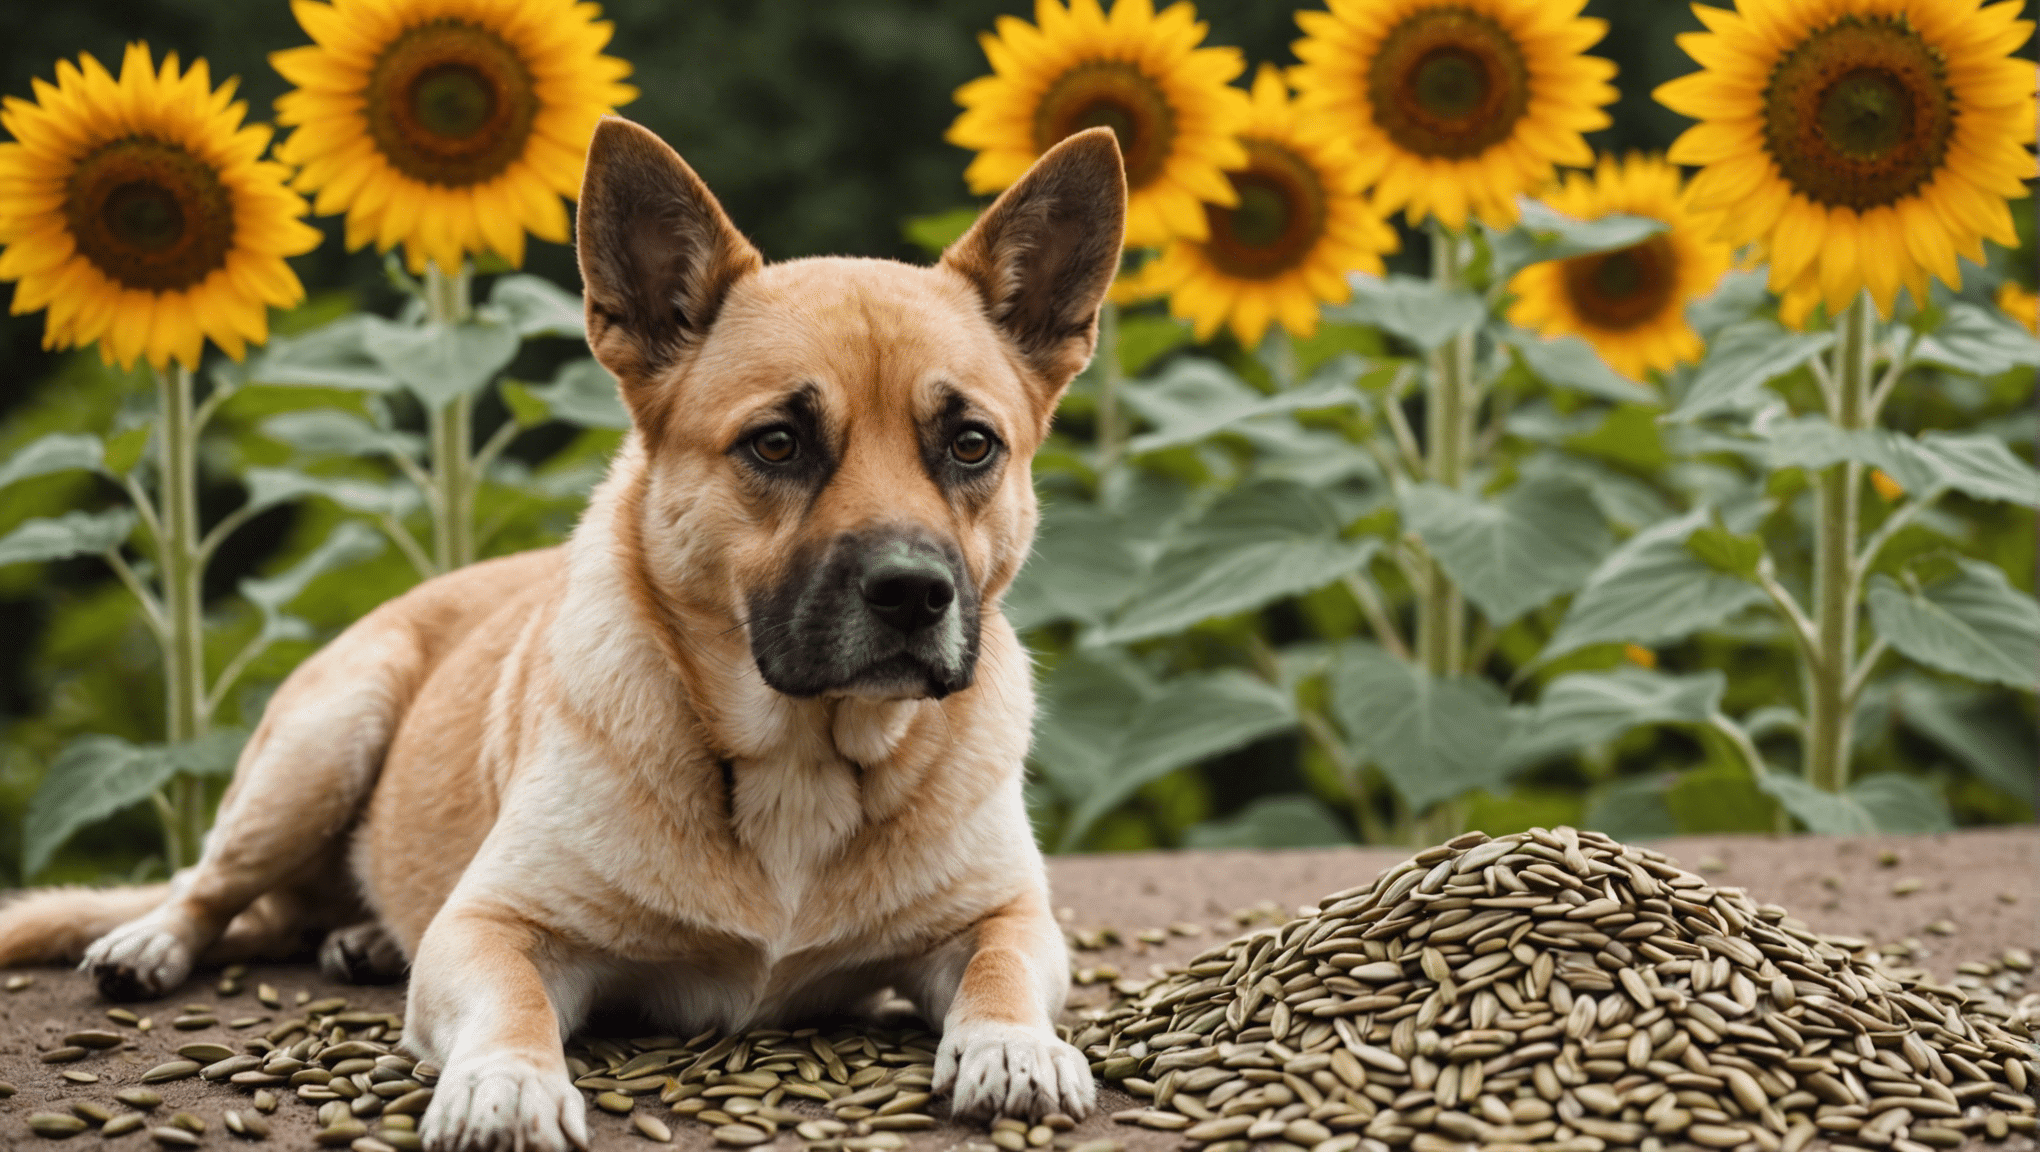 ayçiçeği tohumlarının köpekler için güvenli olup olmadığını keşfedin ve köpek arkadaşınız için potansiyel riskler ve faydalar hakkında bilgi edinin.